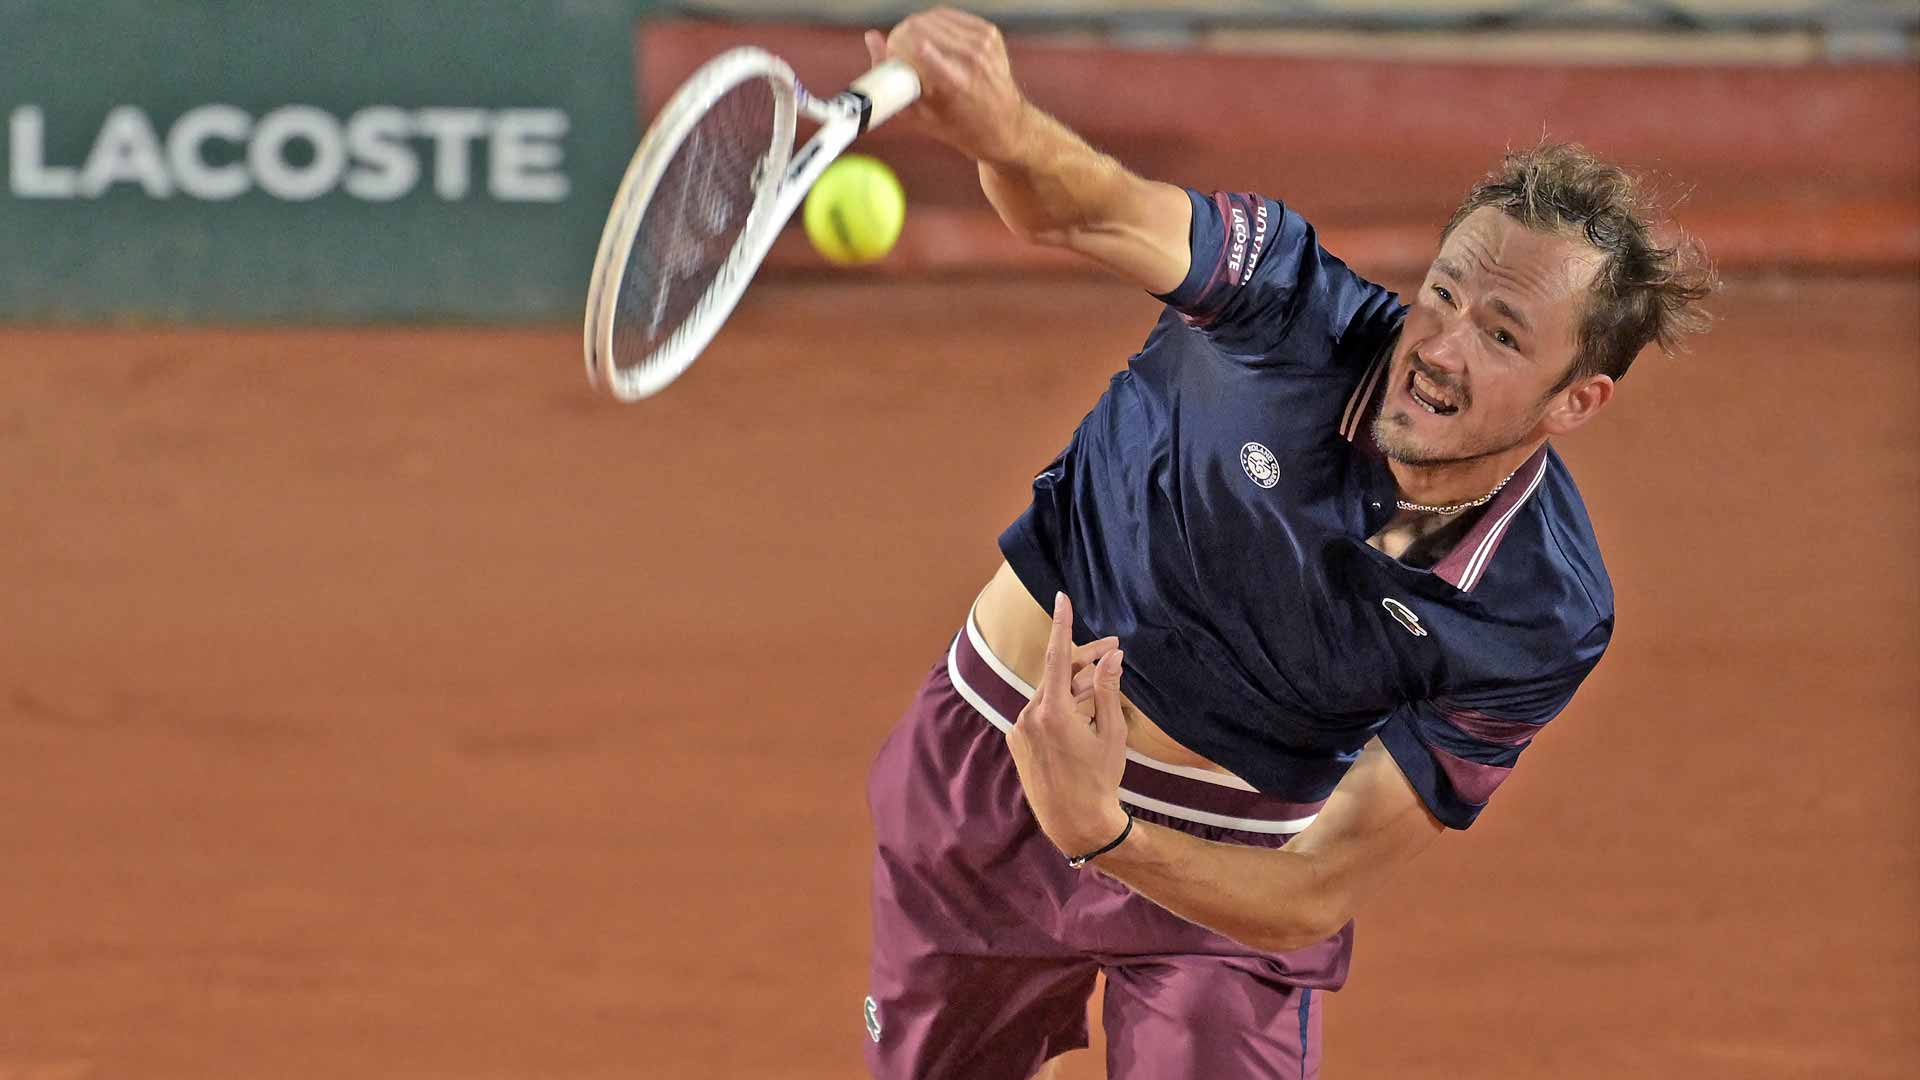 Medvedev battles past Koepfer, Monfils thrills home fans at Roland Garros